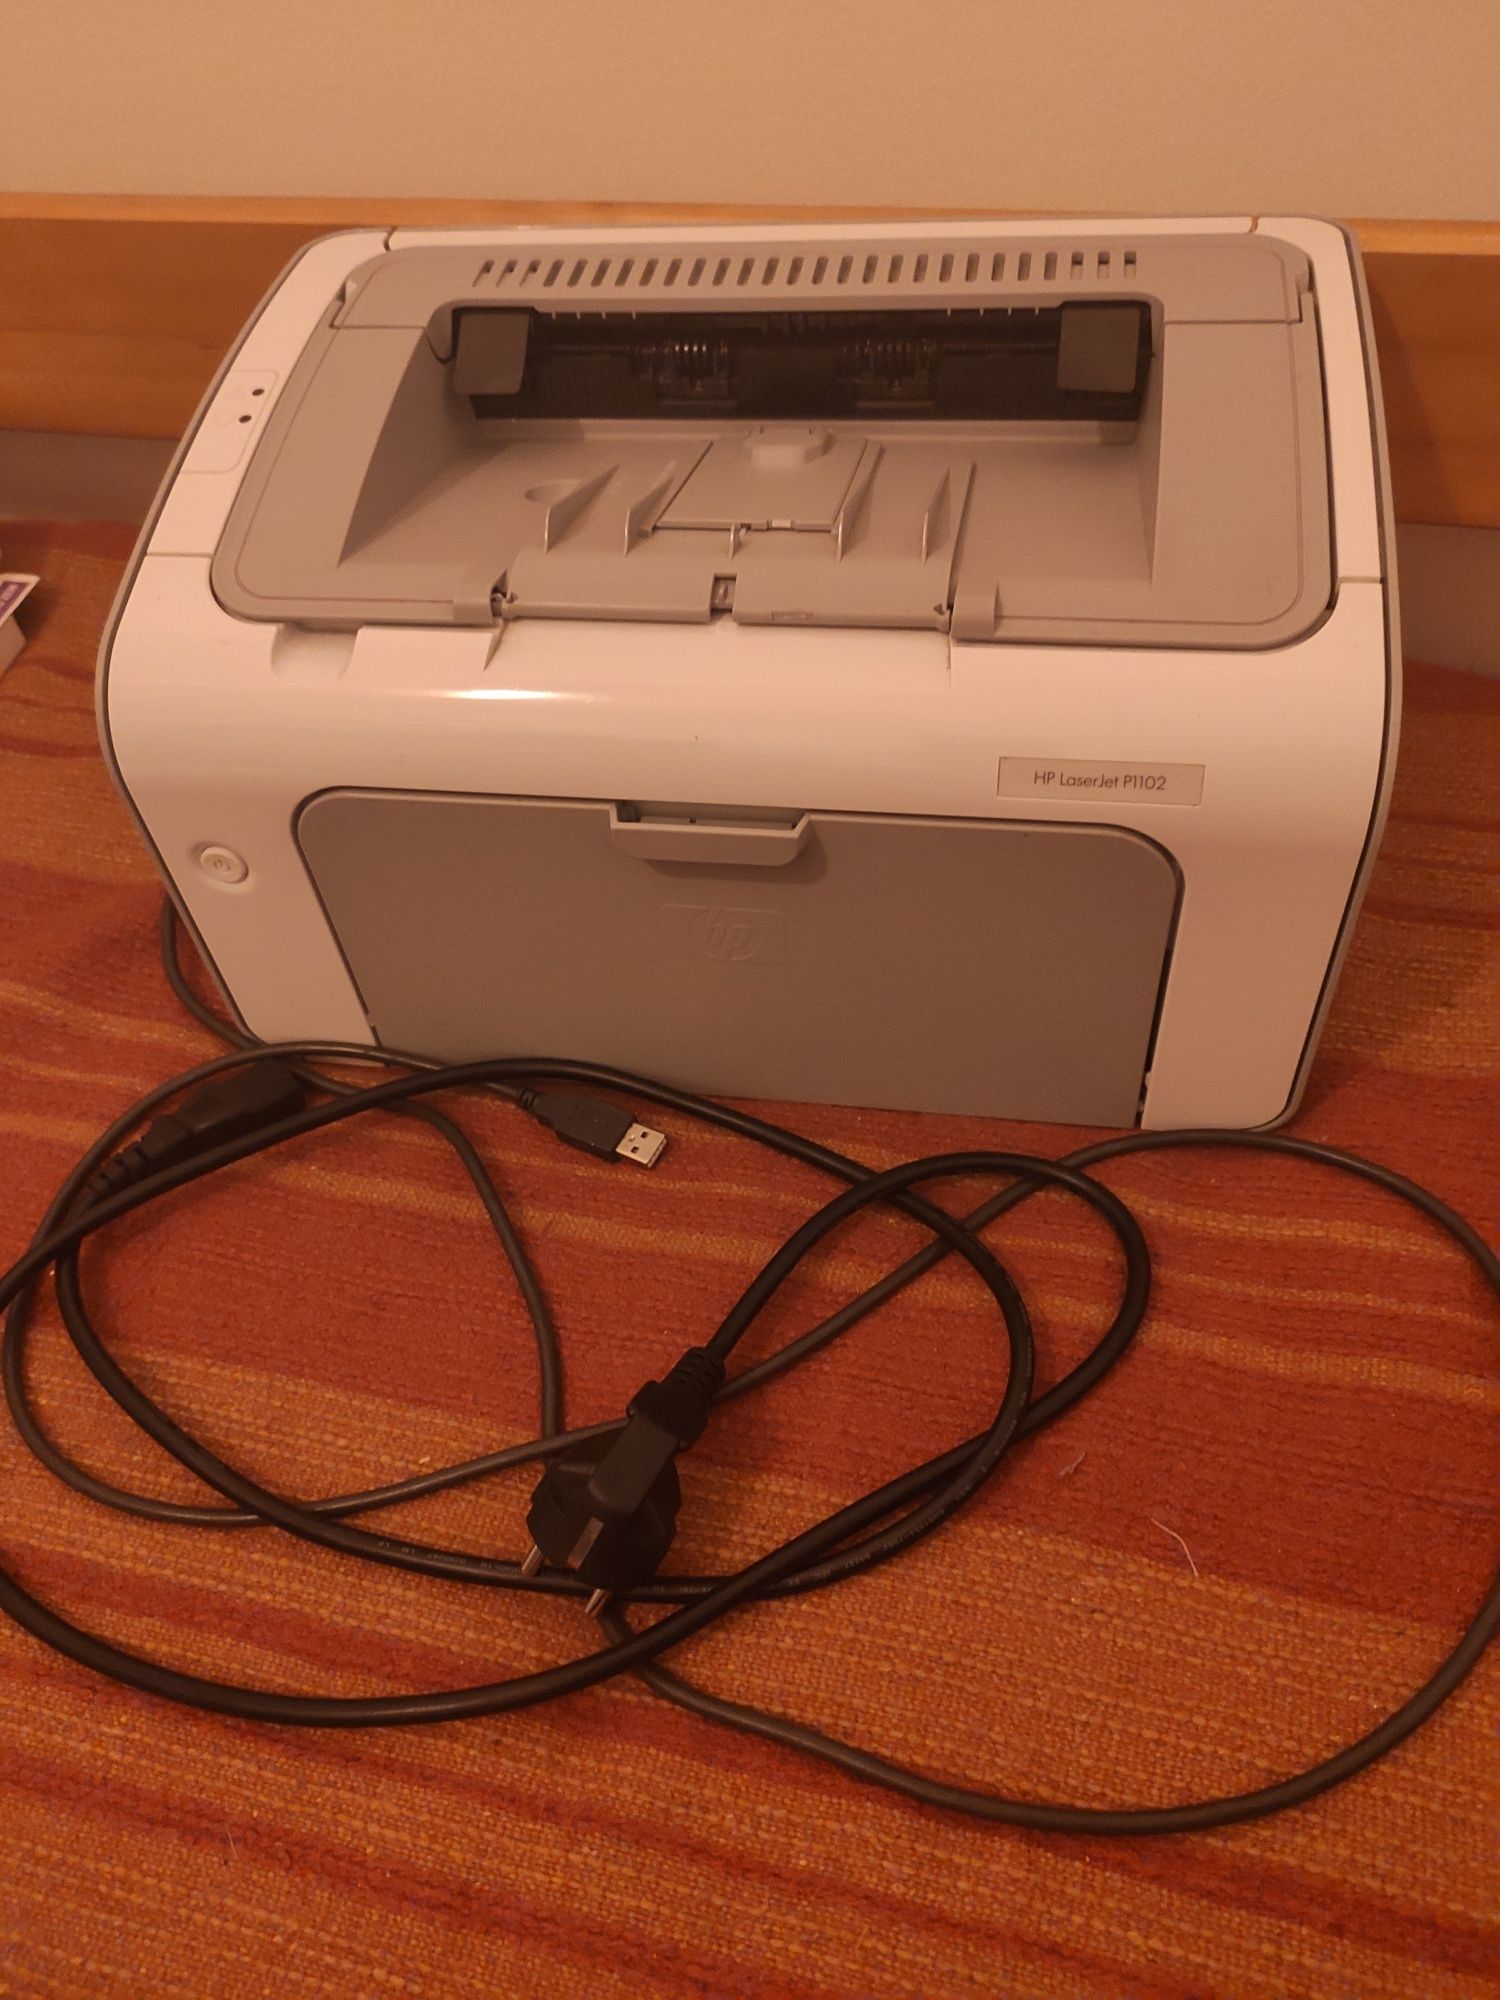 Impressora HP laserjet 1102